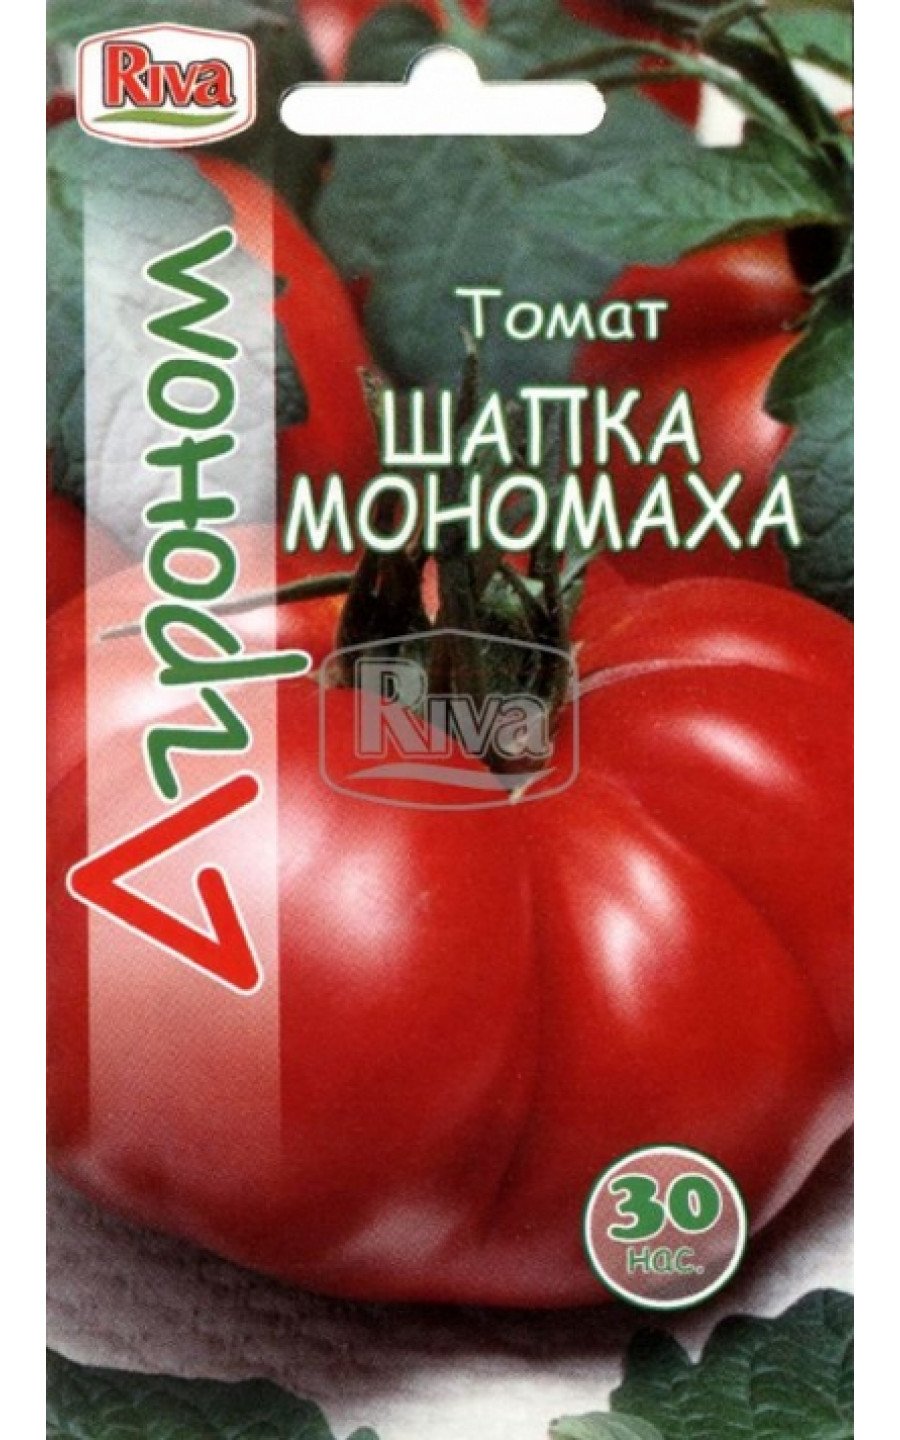 Семена шапка Мономаха помидоры. Семена томата шапка монарха. Сорт шапка Мономаха помидоры. Томат Мономах шапка Мономаха.